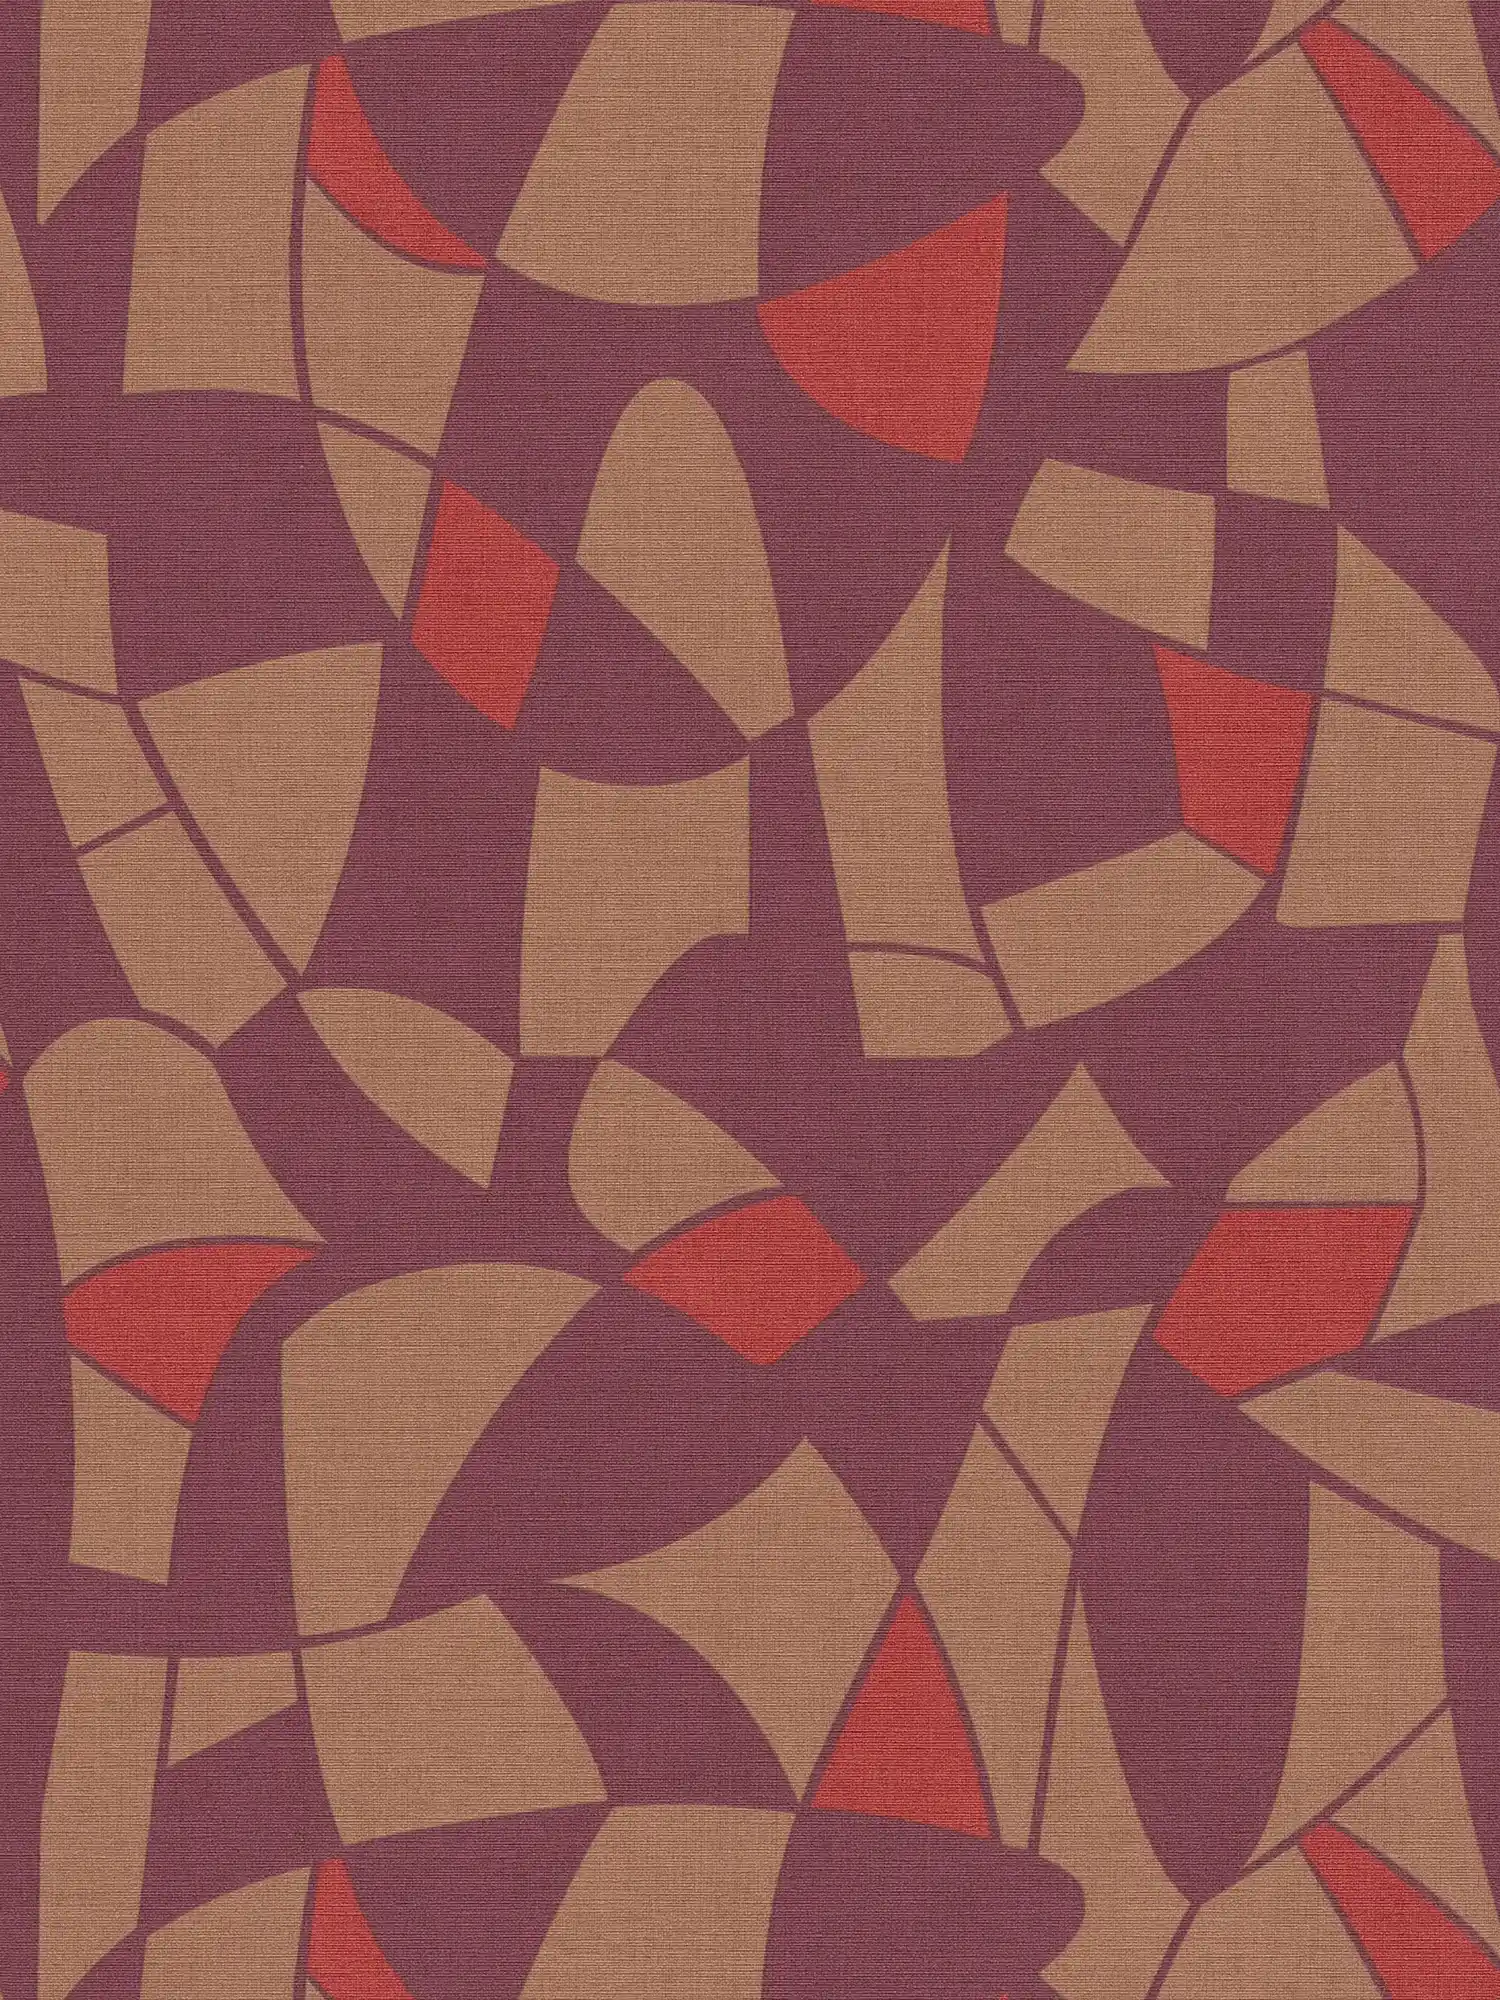 Vliesbehang in donkere kleuren in een abstract patroon - paars, bruin, rood
